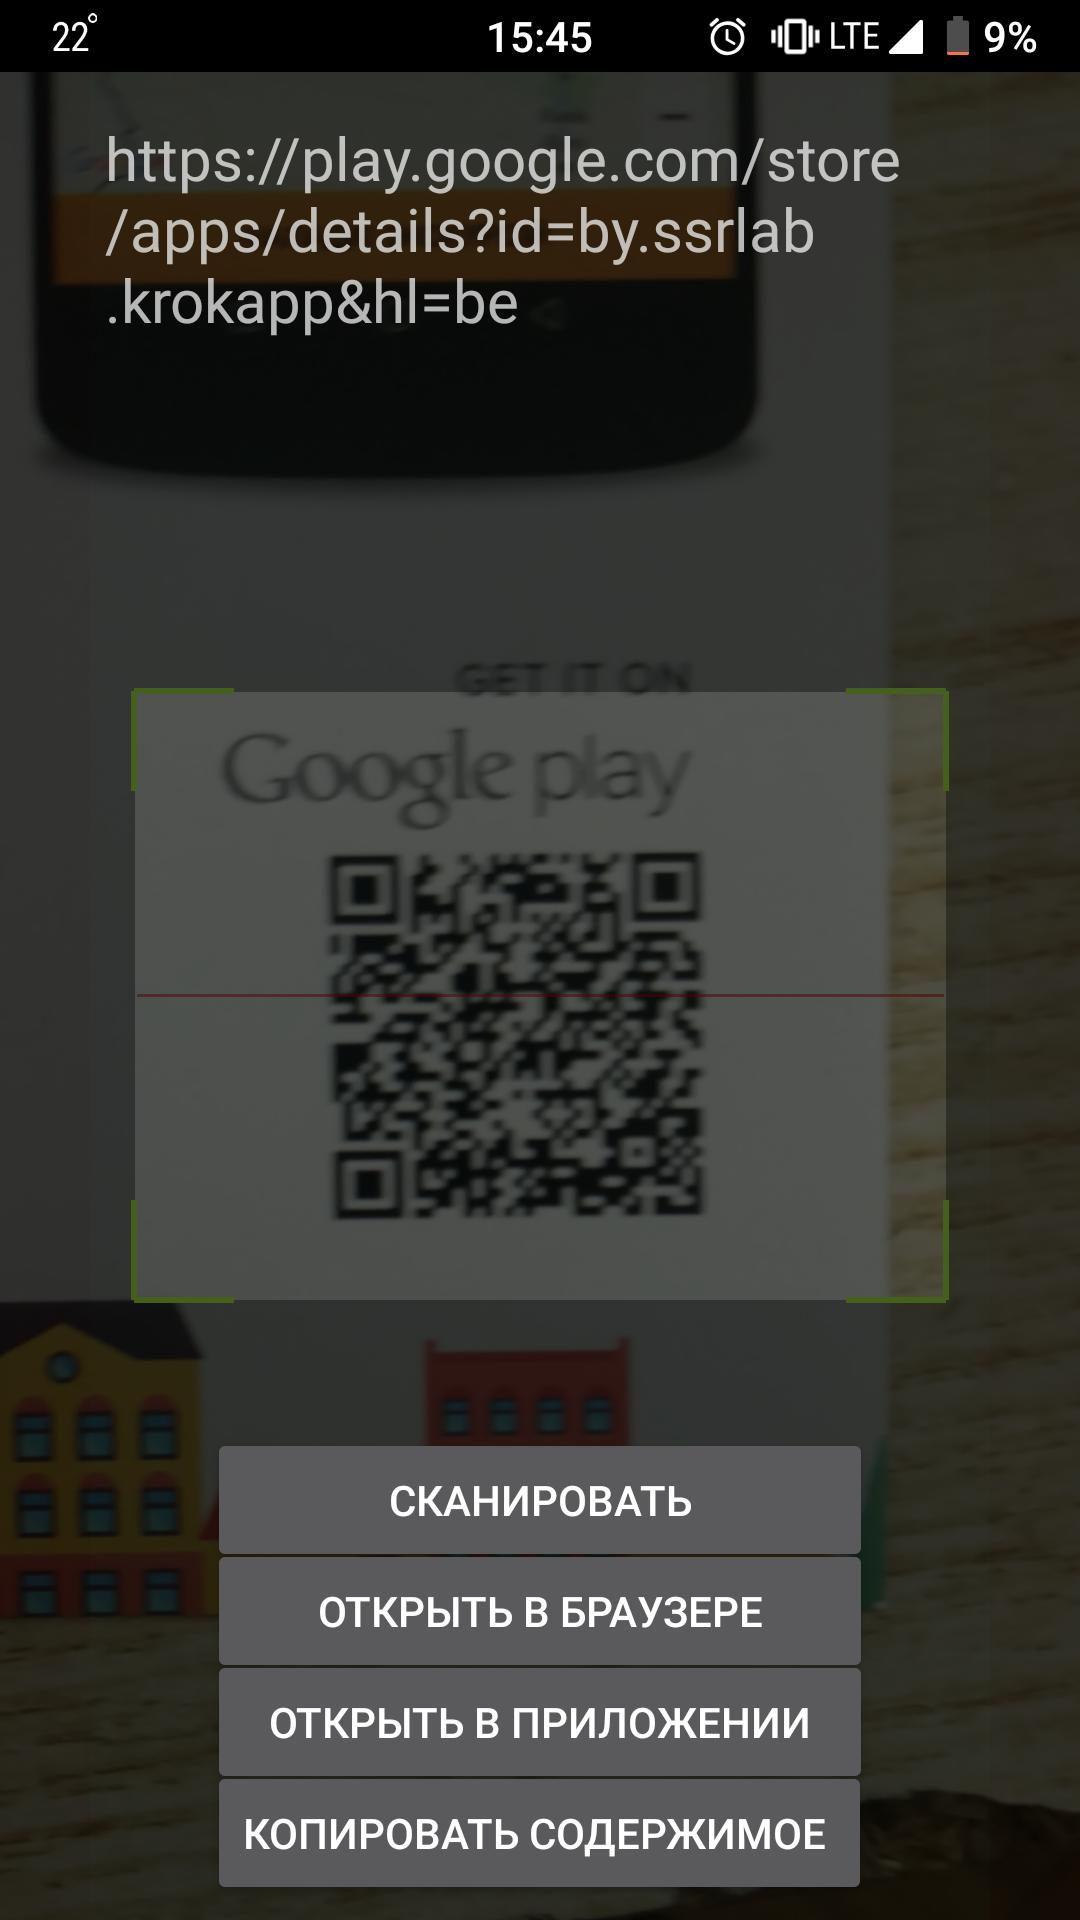 Сканер QR кода для Android приложение. Сканер кодов APK. Считыватель QR кодов для Android. Как сканировать QR код на андроид без приложения. Лучший сканер кодов для андроид